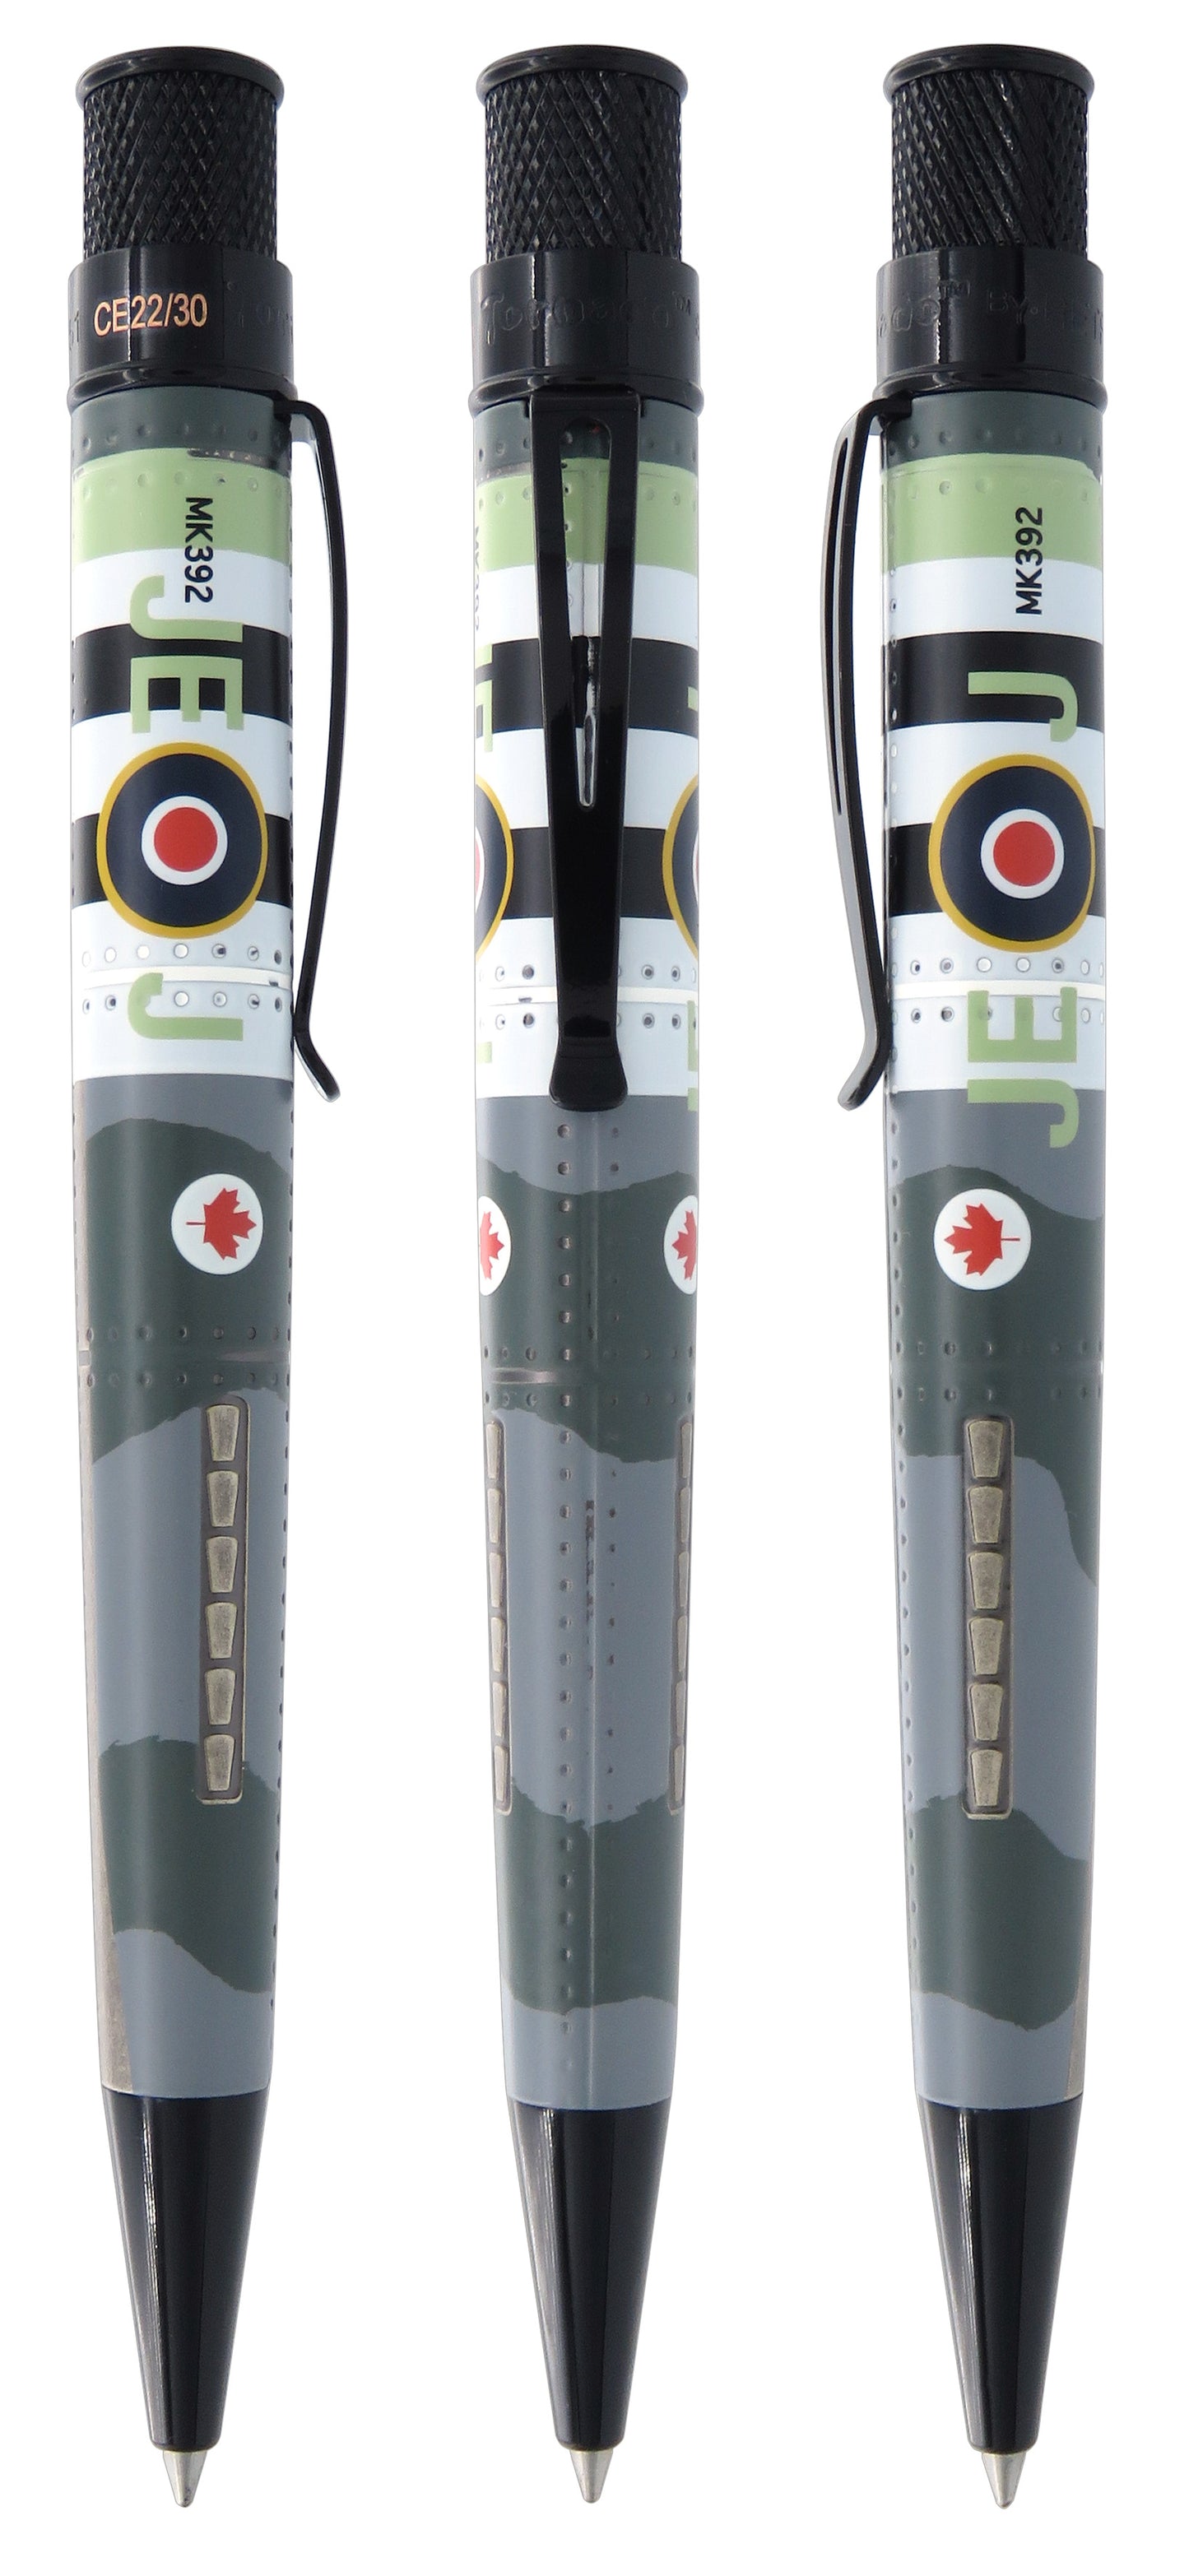 Retro 51 Tornado - Spitfire (Collectors Edition Set)